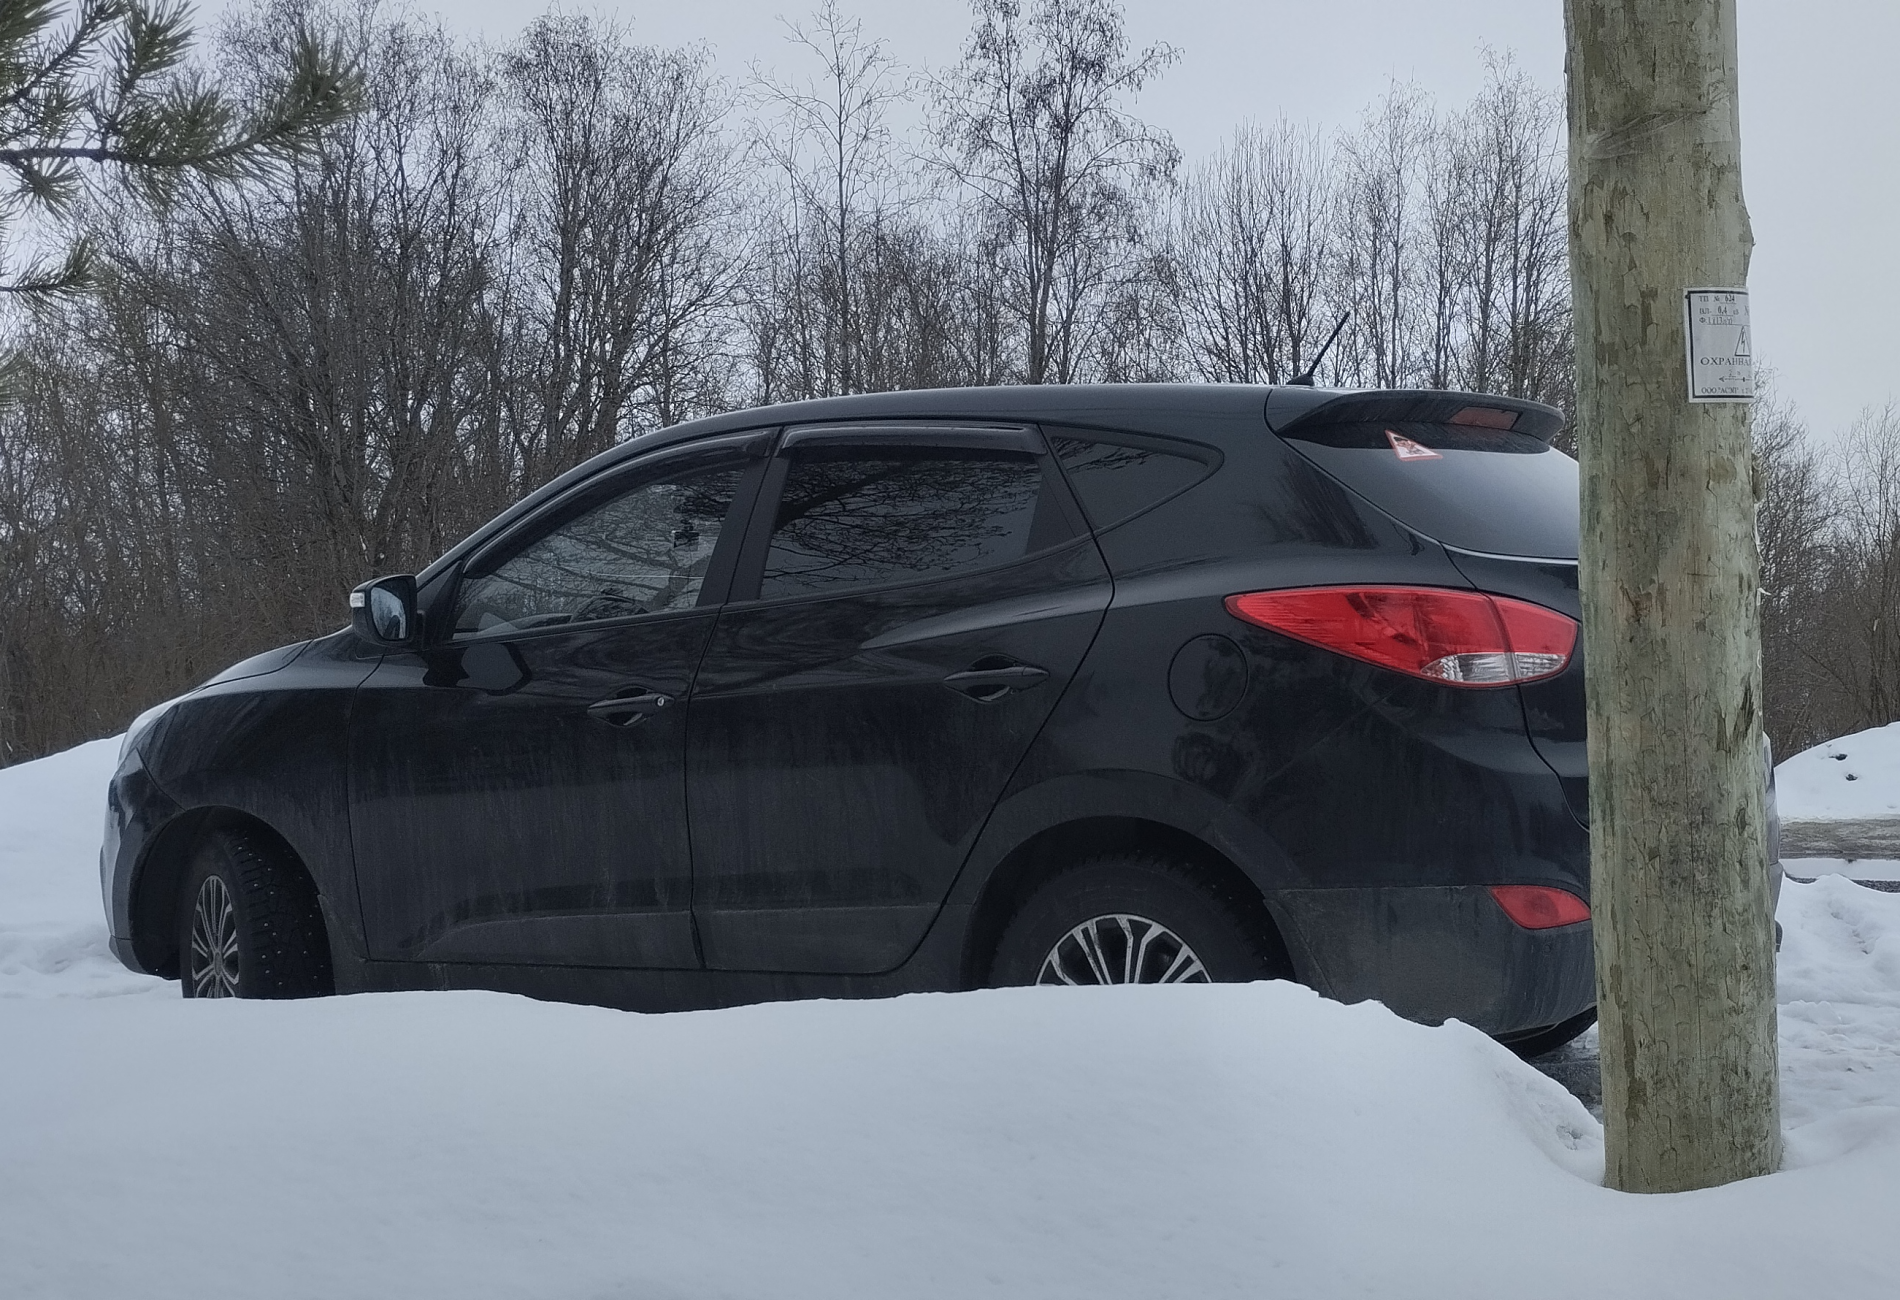 Аренда hyundai ix35 эконом класса 2015 года в городе Москва от 1600 руб./сутки, передний привод, двигатель: бензин, объем 2 литра, ОСАГО (Впишу в полис), без водителя, недорого - RentRide